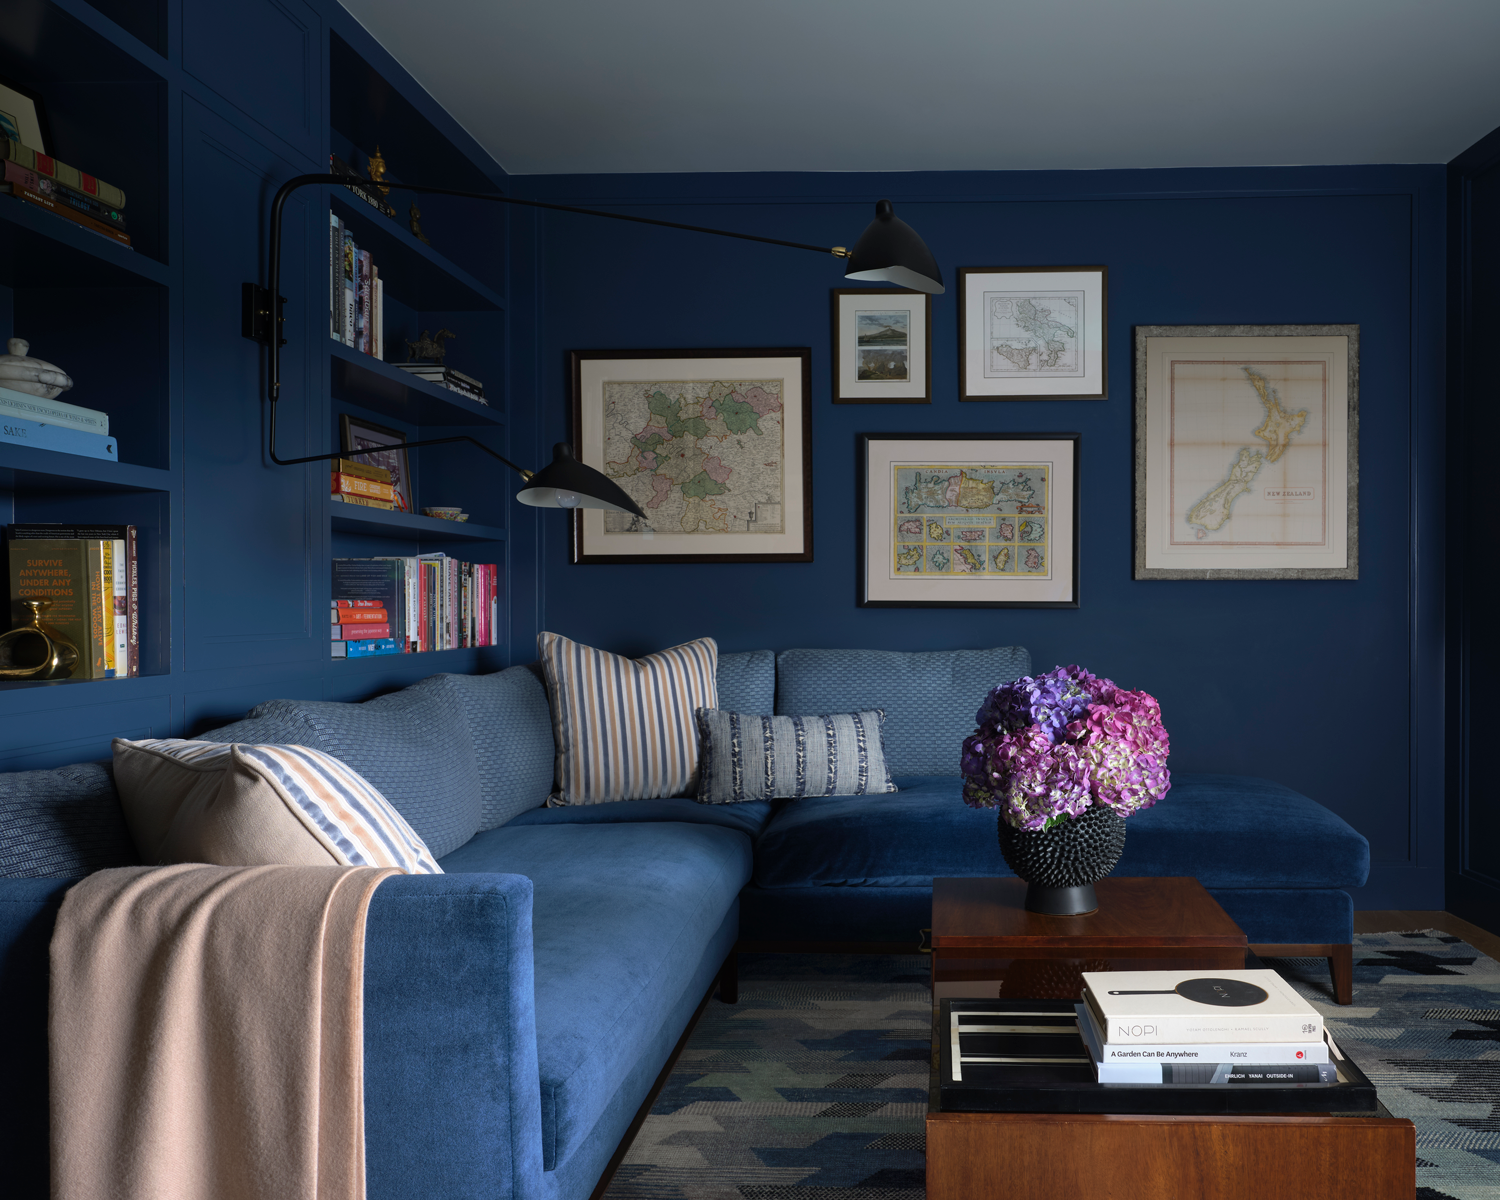 The 10 Best Navy Blue Paint Colors, Per Designers